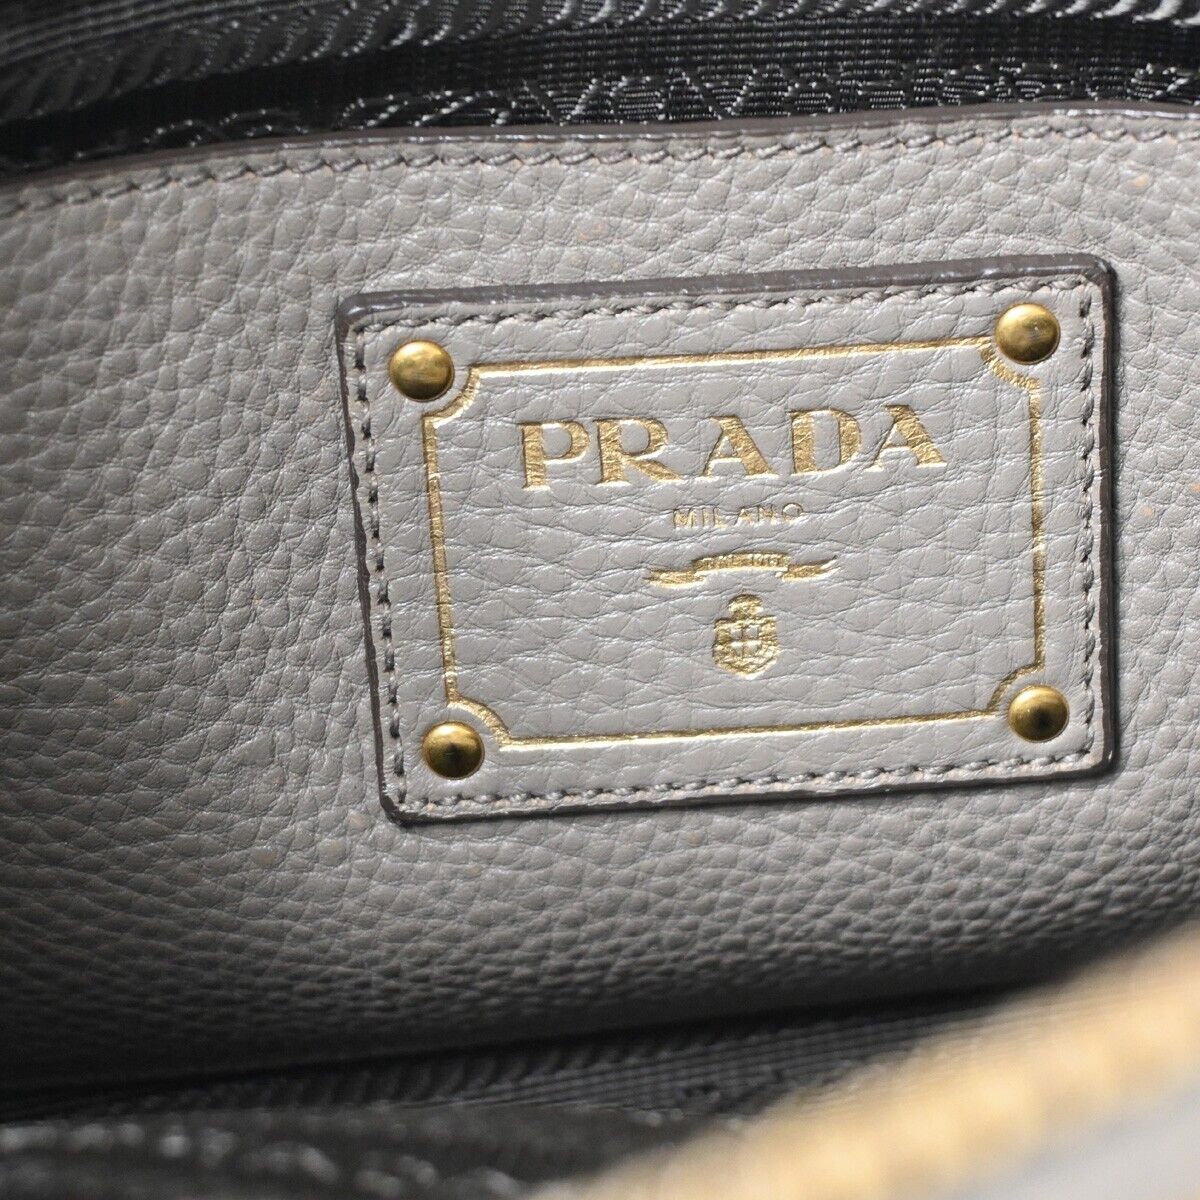 Prada Saffiano Grey Leather Handbag (Pre-Owned)